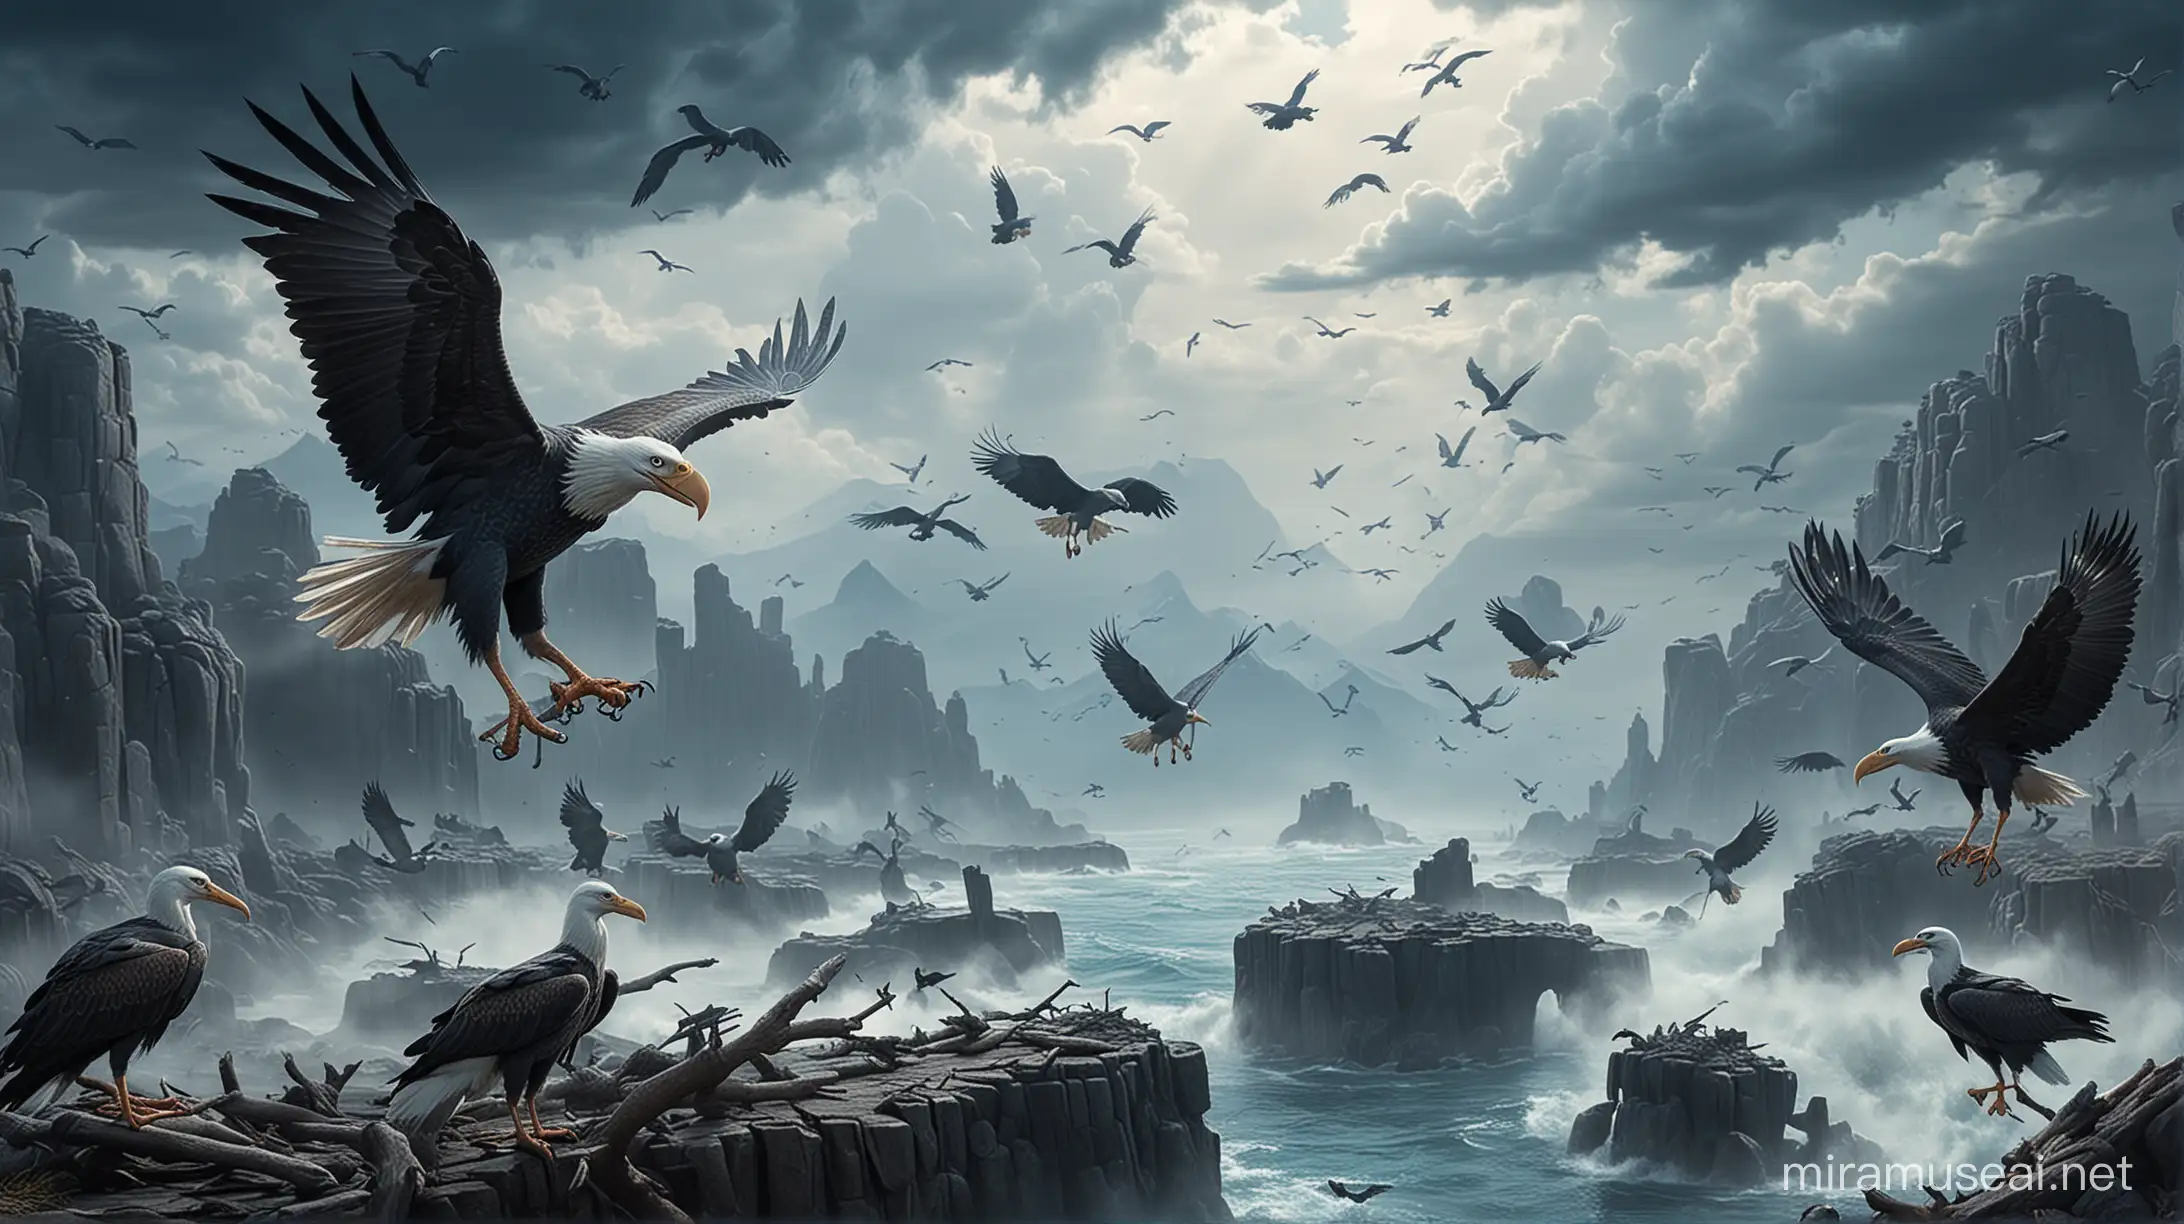 Epic Aerial Battle Storks vs Eagles in Blue Sky